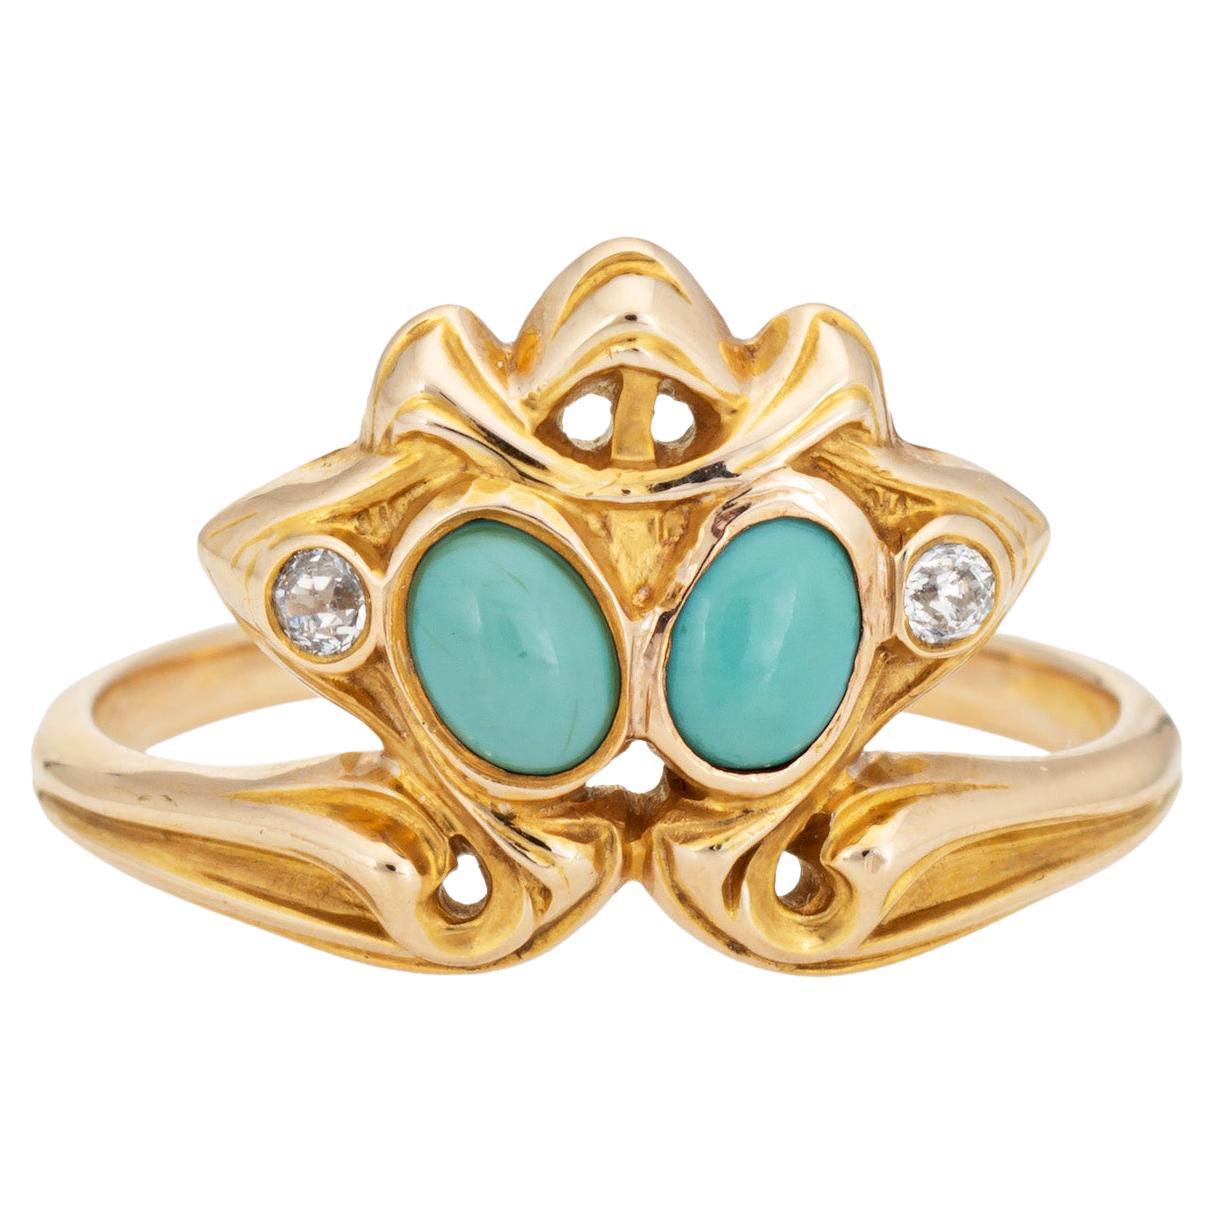 Antique Art Nouveau Ring Larter & Sons Turquoise Diamond 14k Yellow Gold Sz 7.5